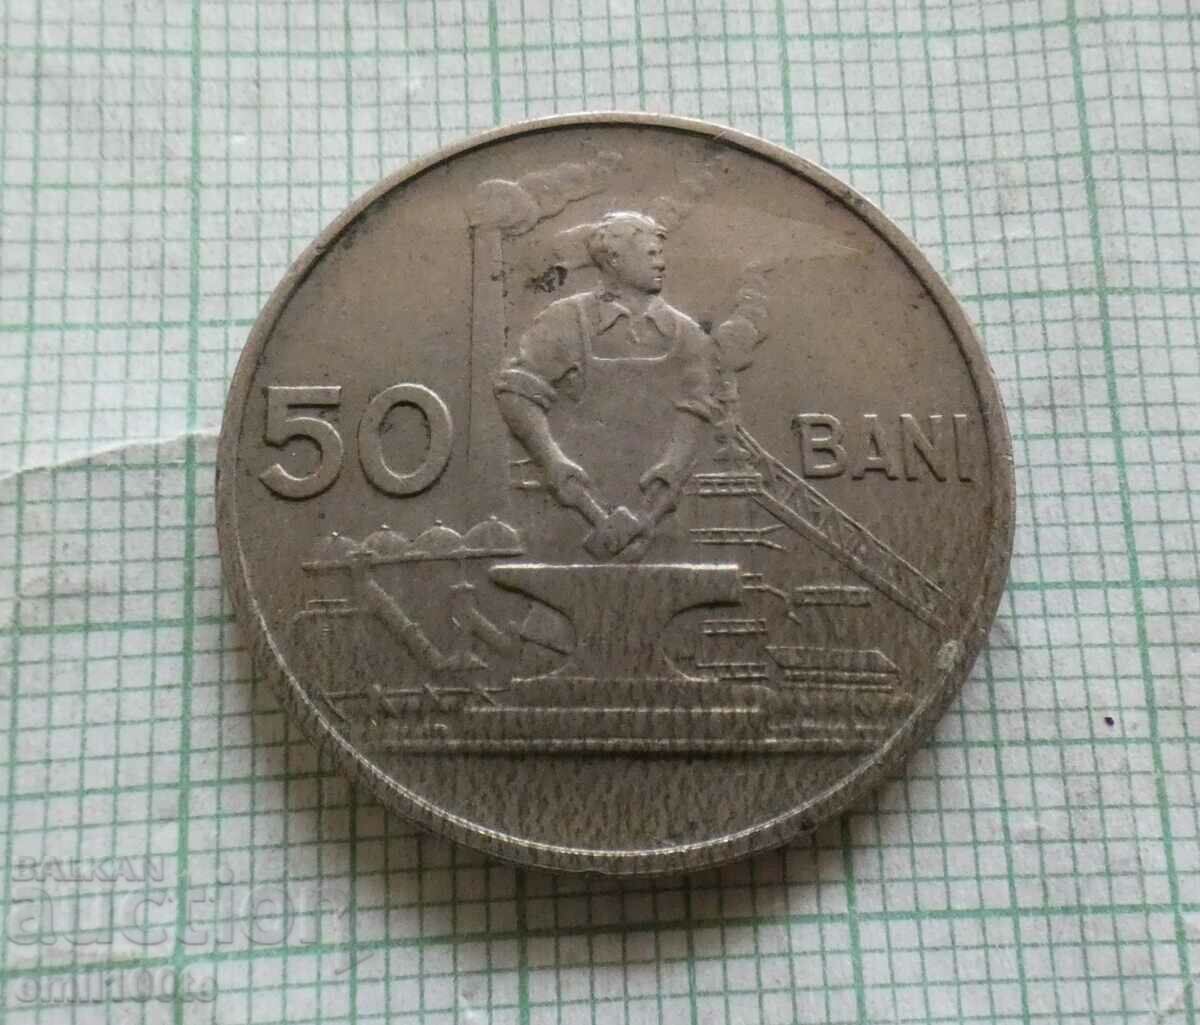 50 λουτρά 1955 Ρουμανία